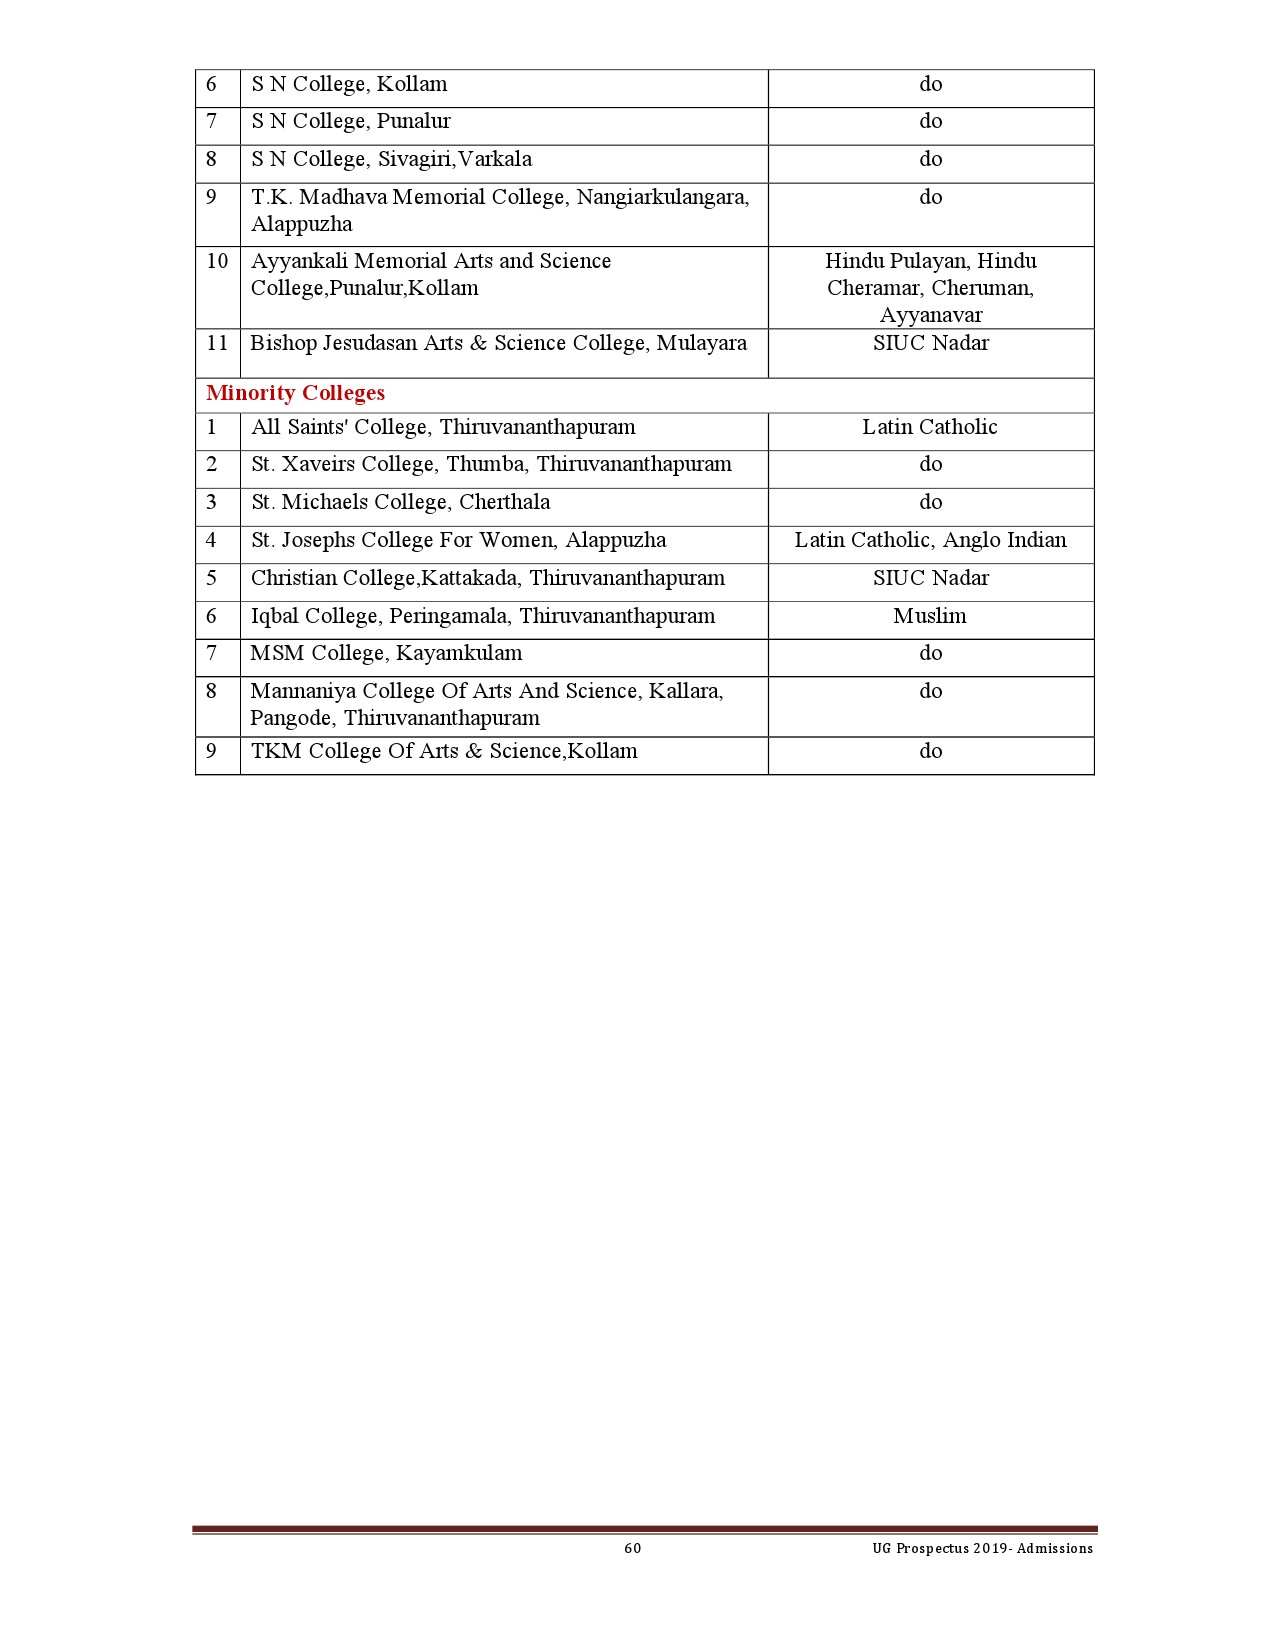 Kerala University UG Admission Prospectus 2019 - Notification Image 60